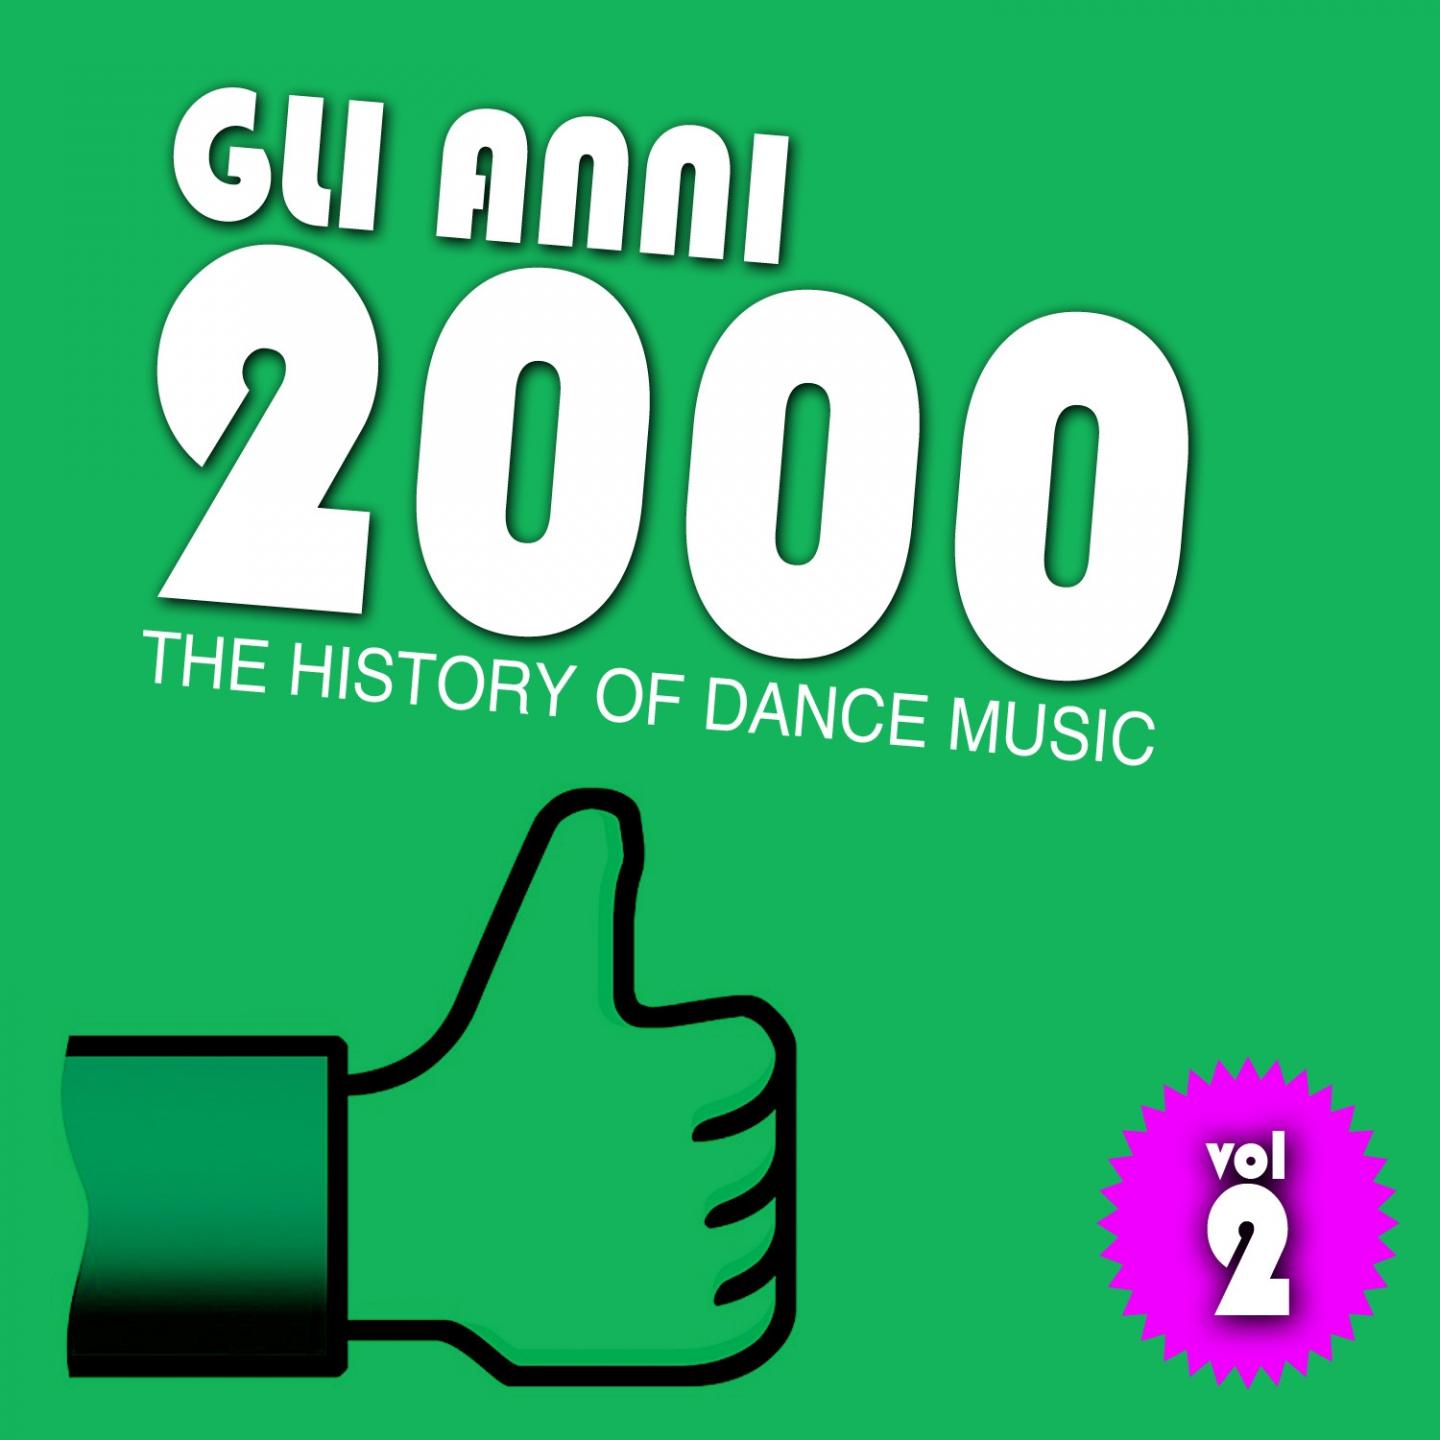 Gli anni 2000, Vol. 2 (The History of Dance Music)